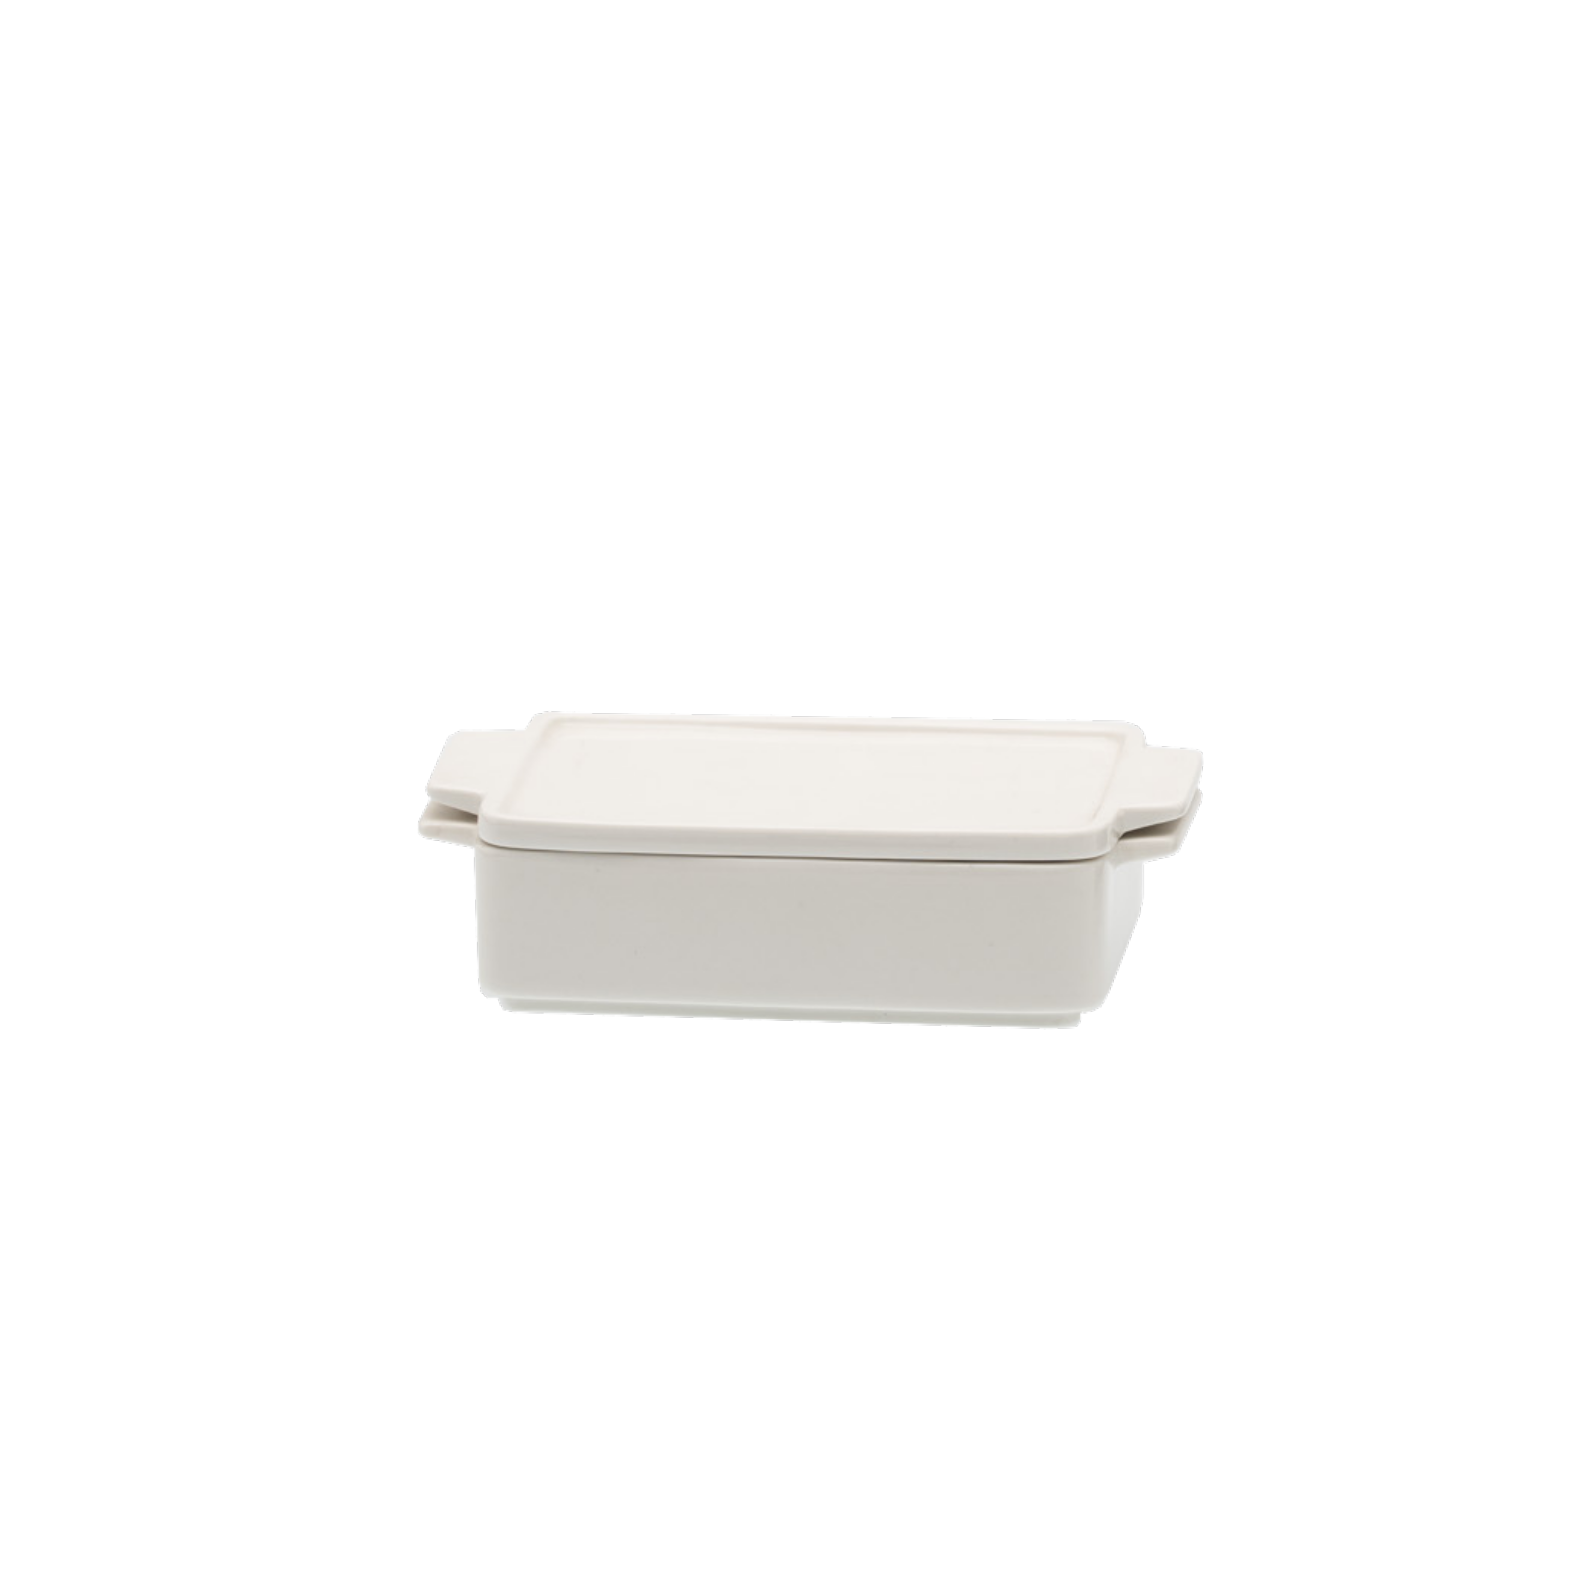 BAKING DISH Rectangular white ceramic with lid